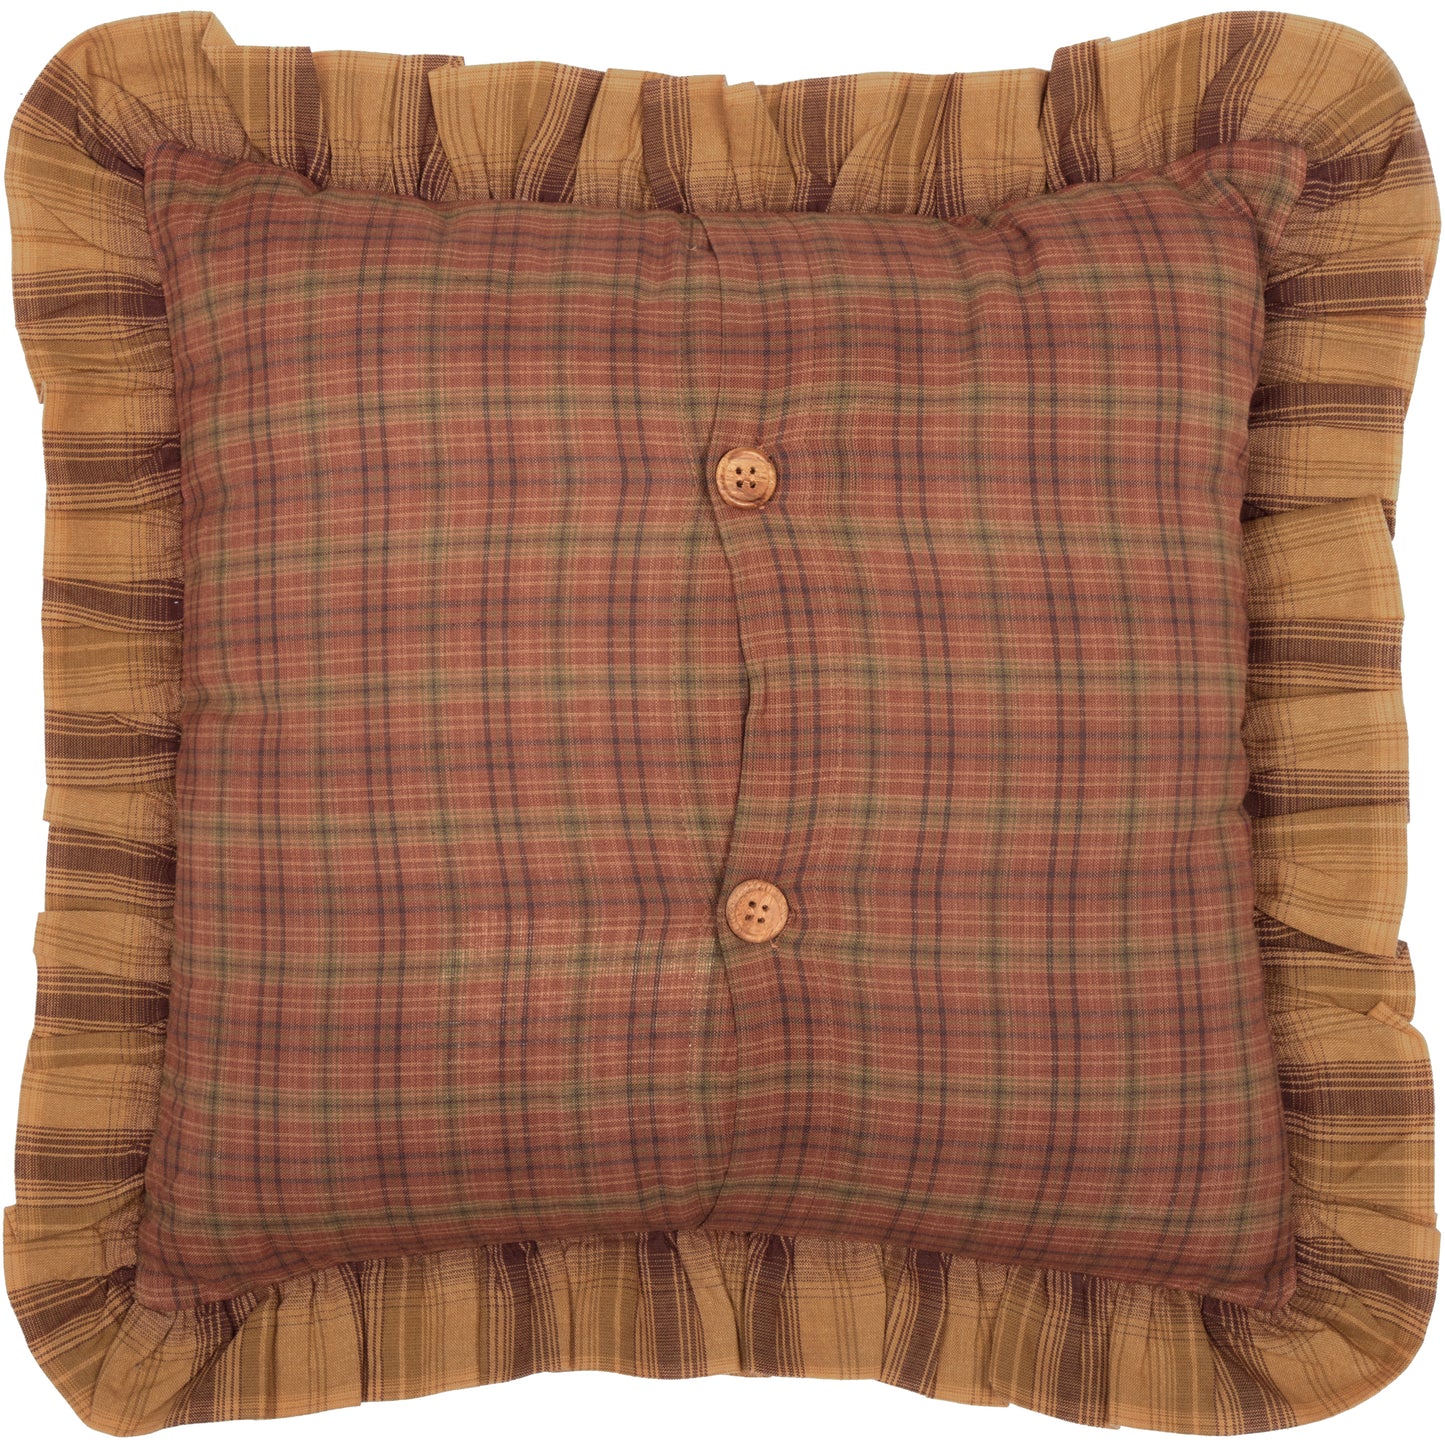 32933-Prescott-Pillow-Fabric-Ruffled-16x16-image-3